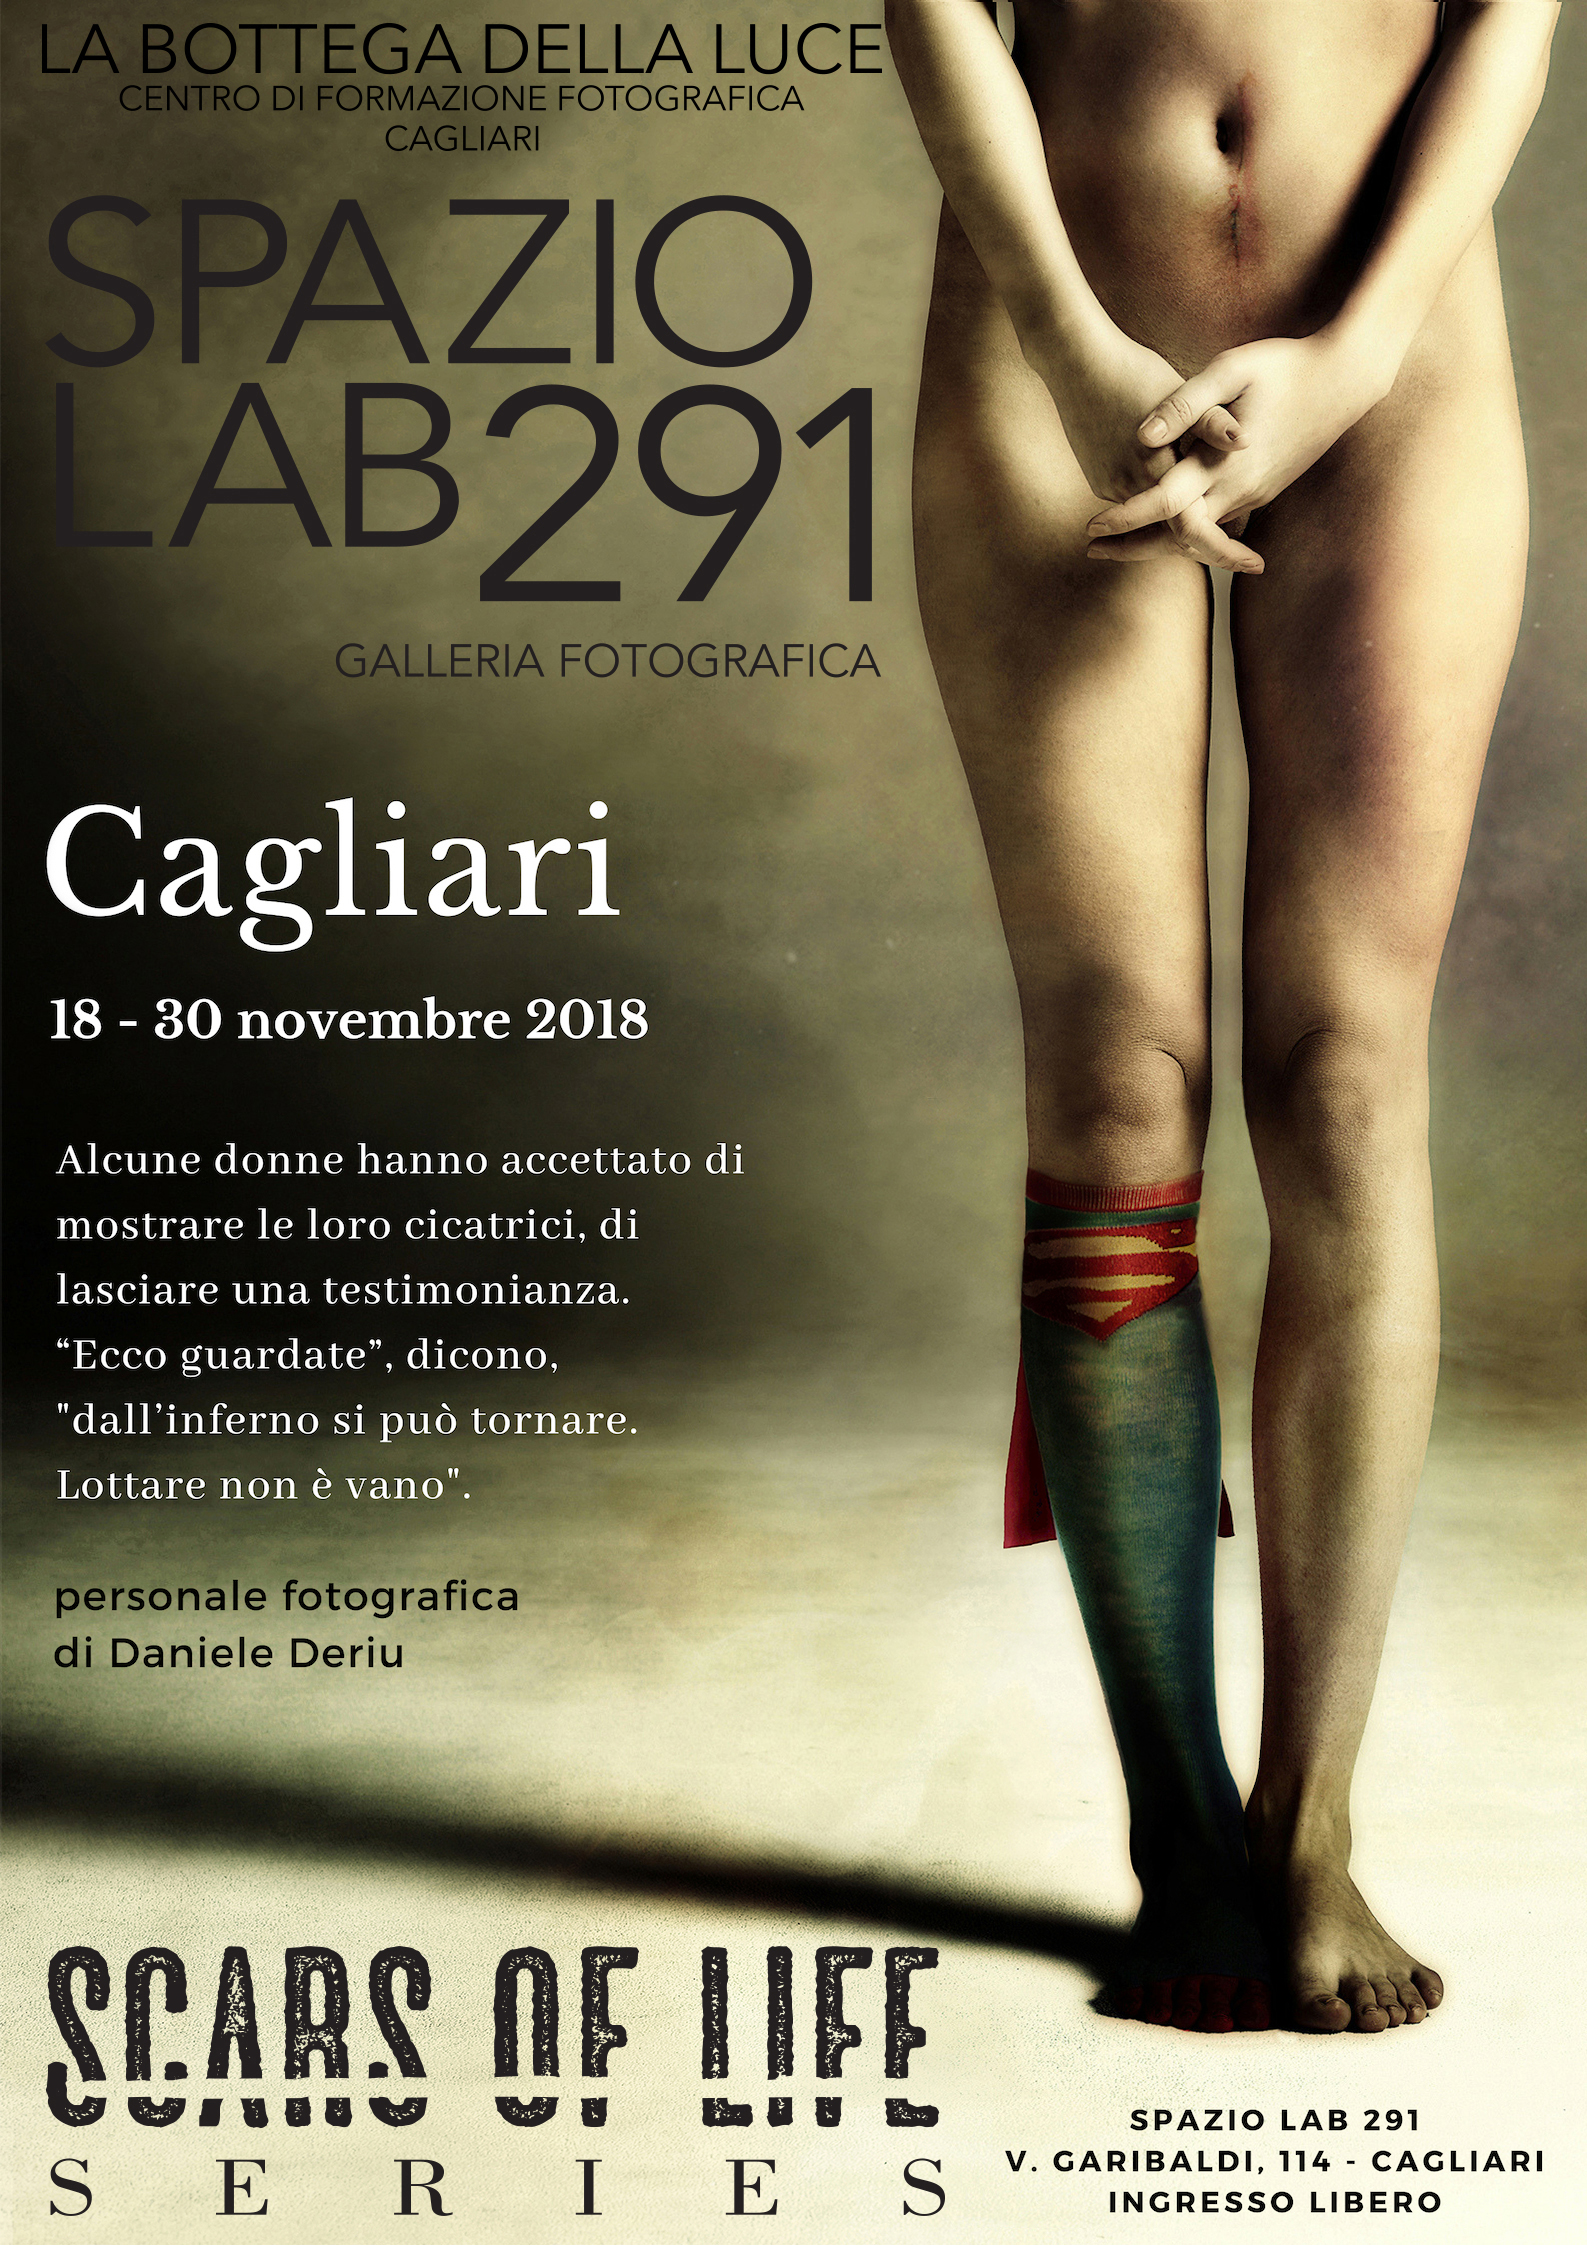 La serie Scars of life di Daniele Deriu in mostra a Cagliari